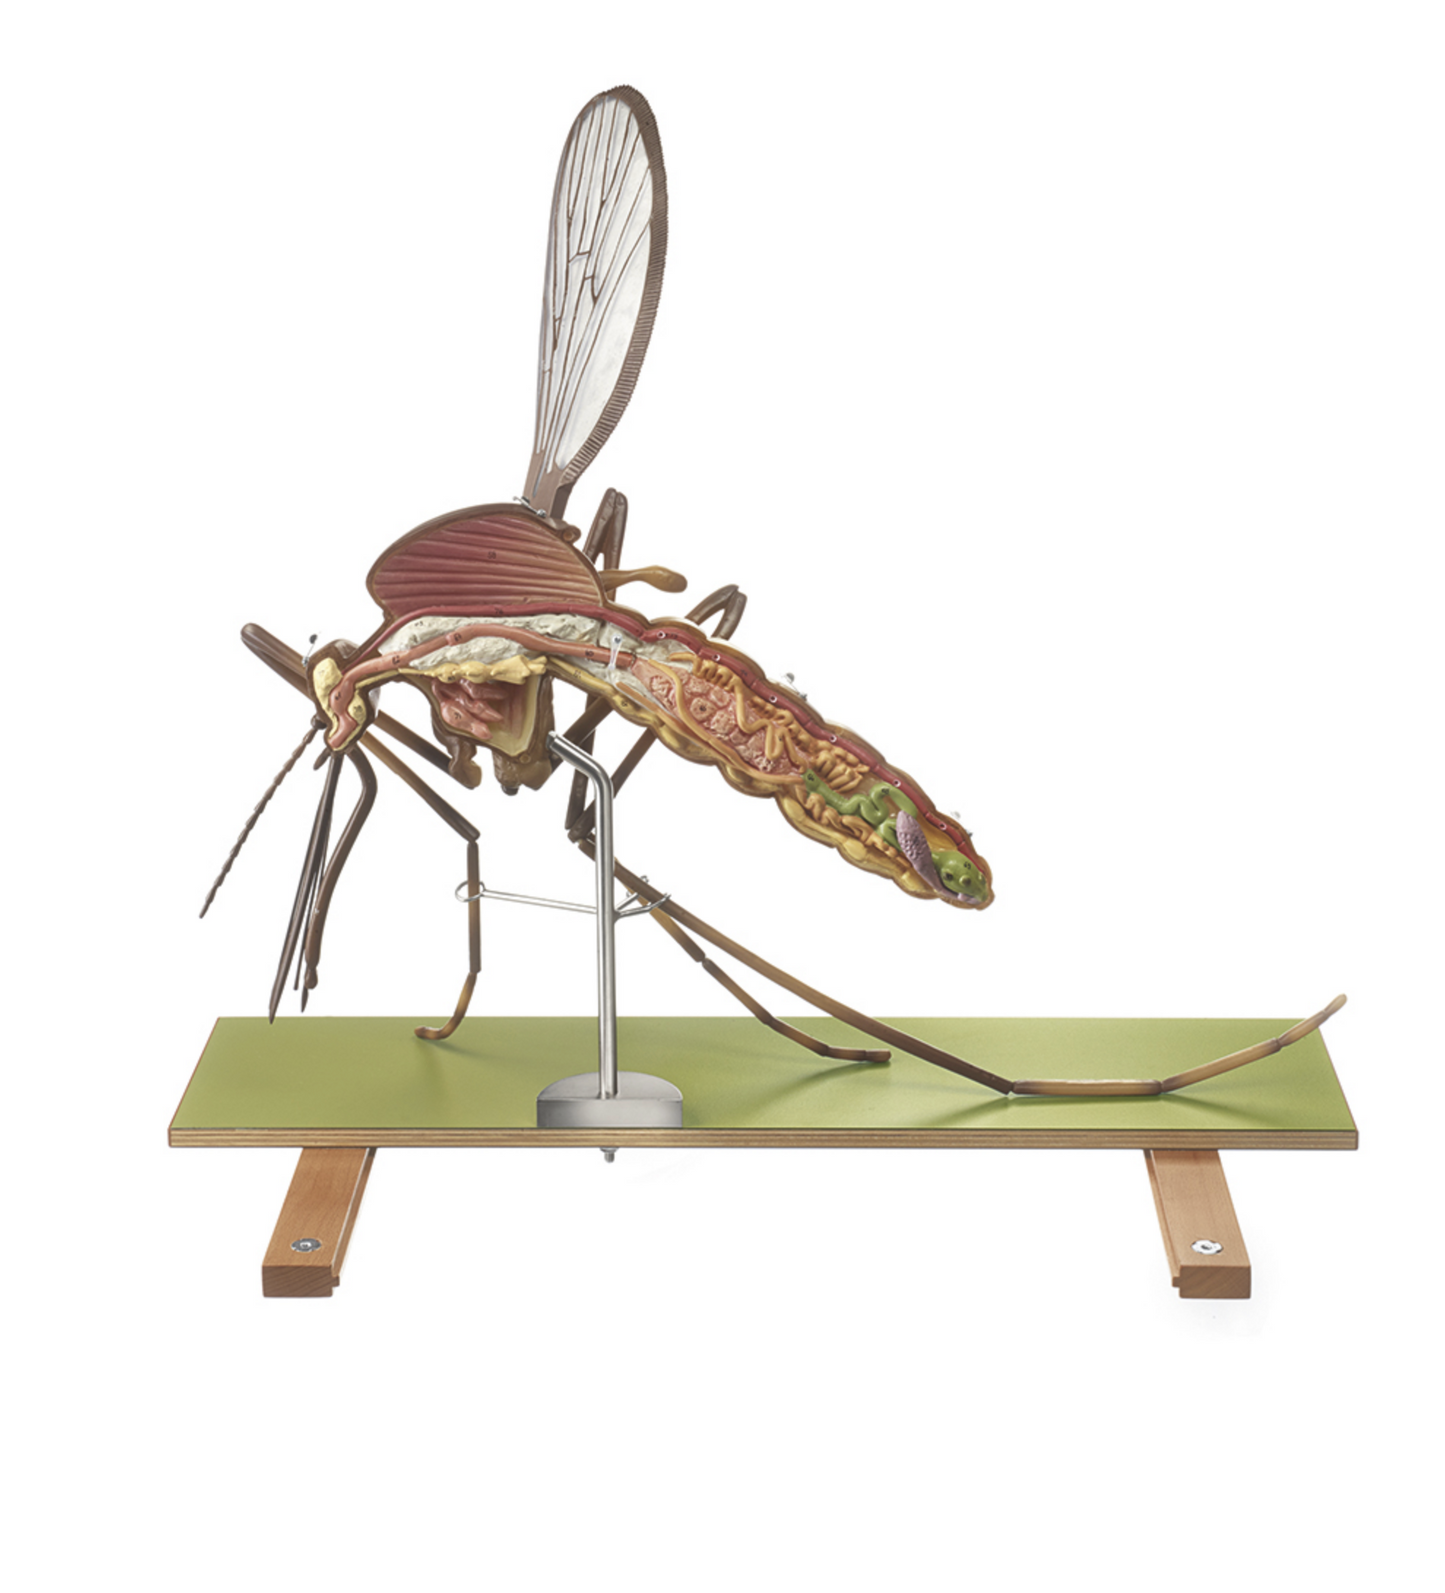 Modell av en mygga (Culex pipiens) i högsta kvalitet och kraftigt förstorad. Kan delas upp i 7 delar